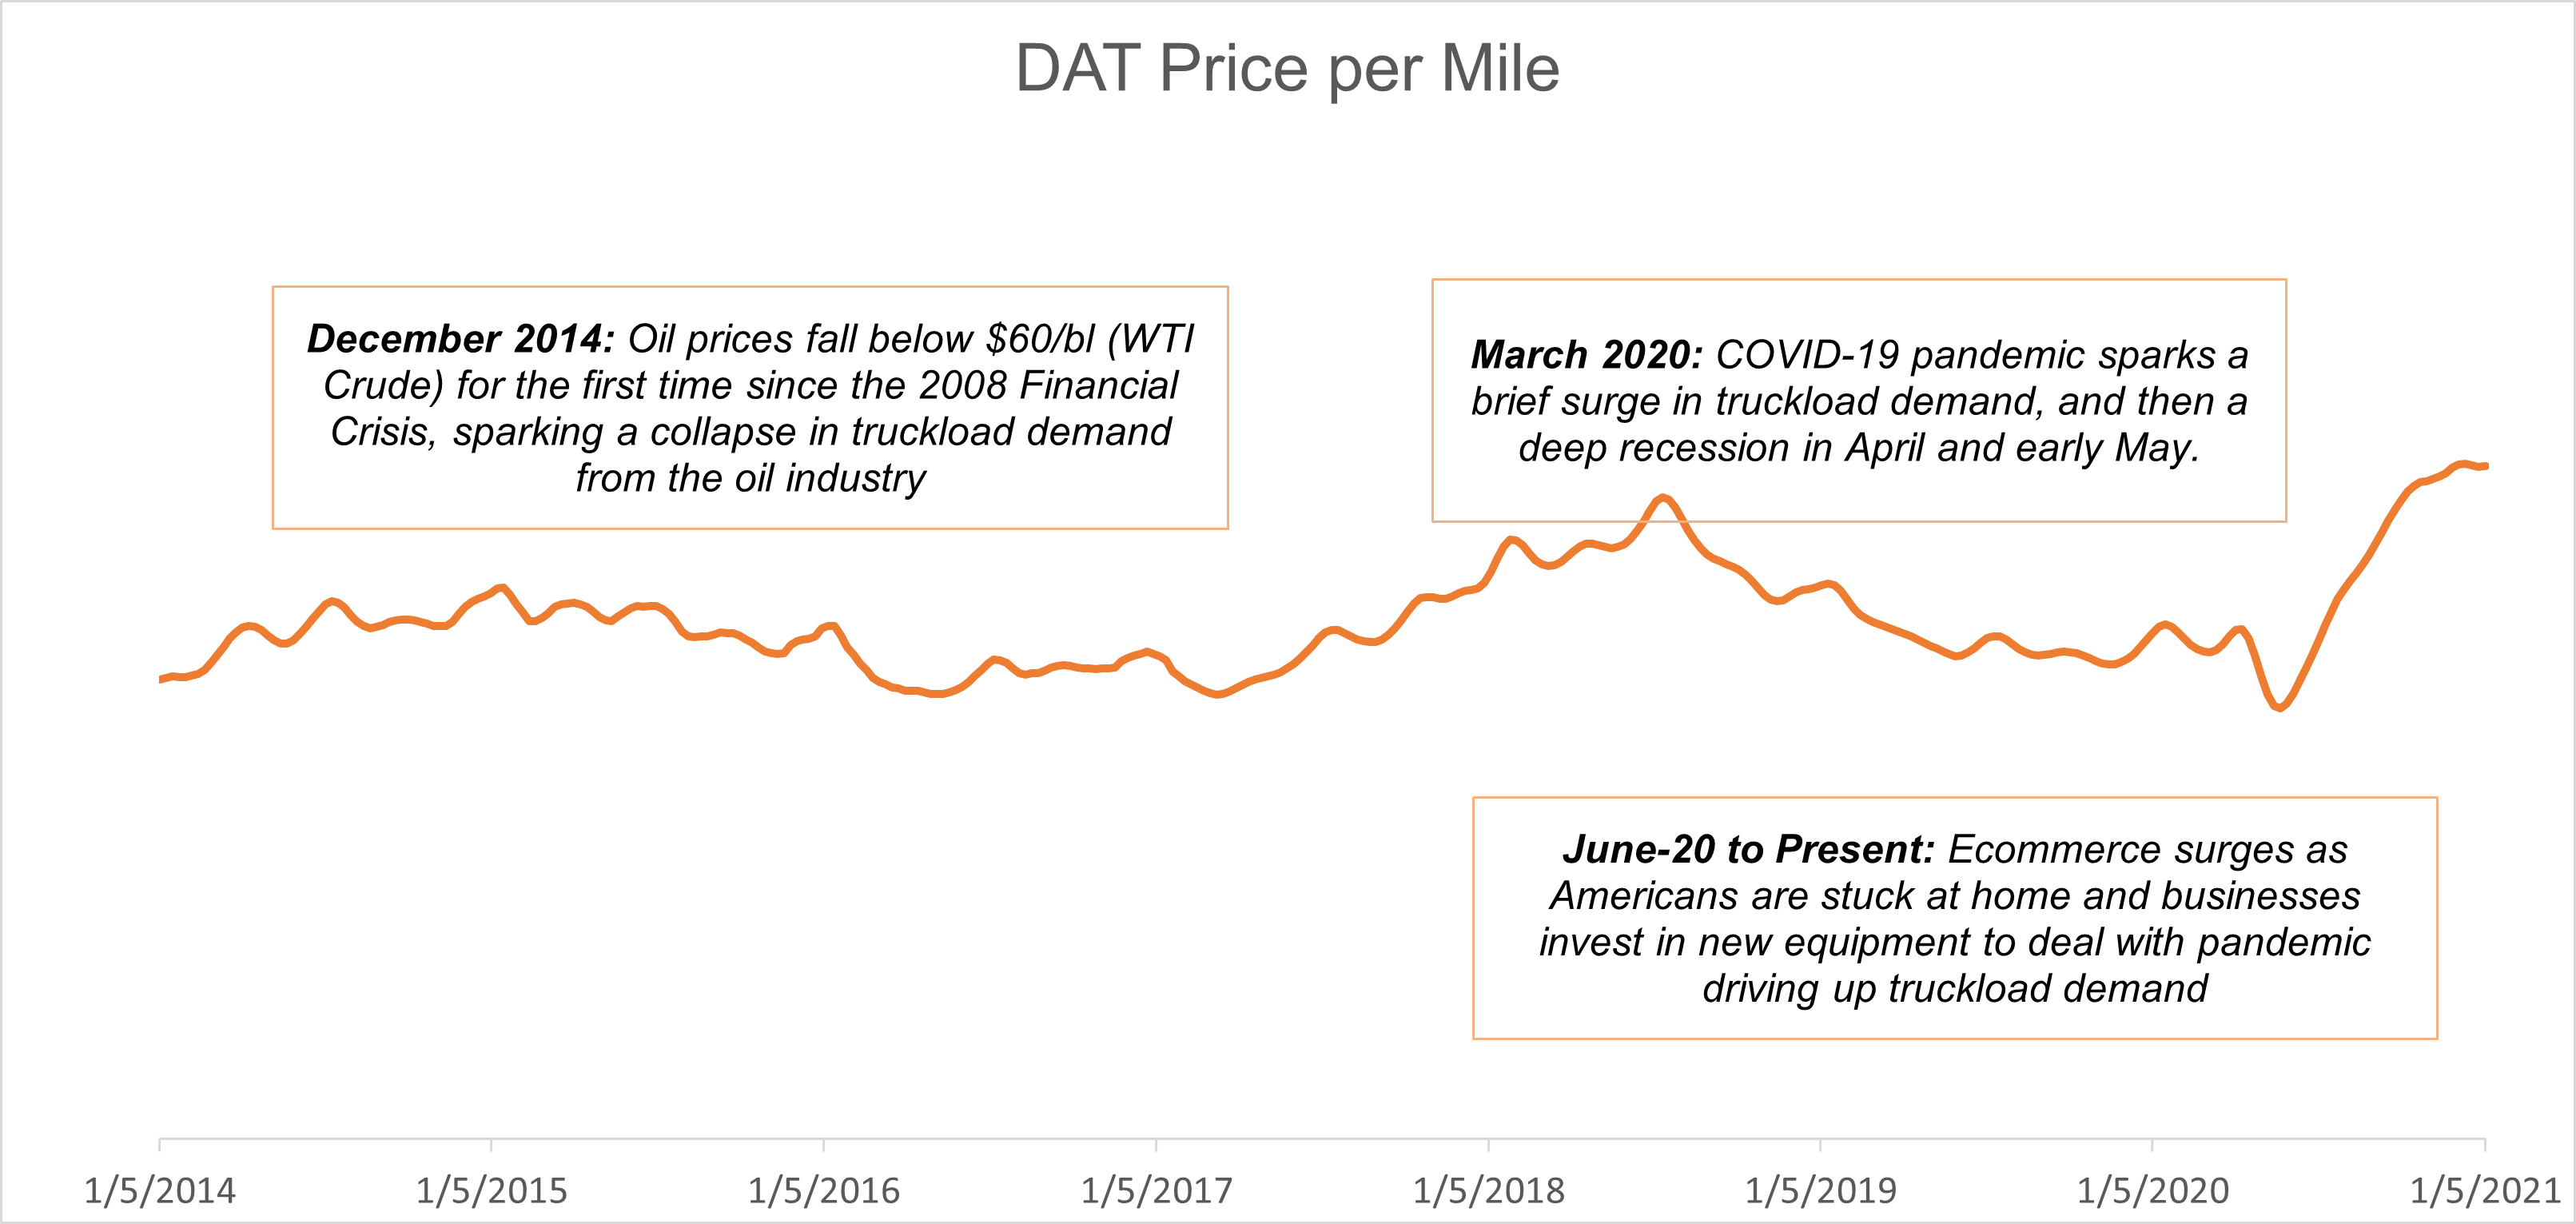 DAT price per mile